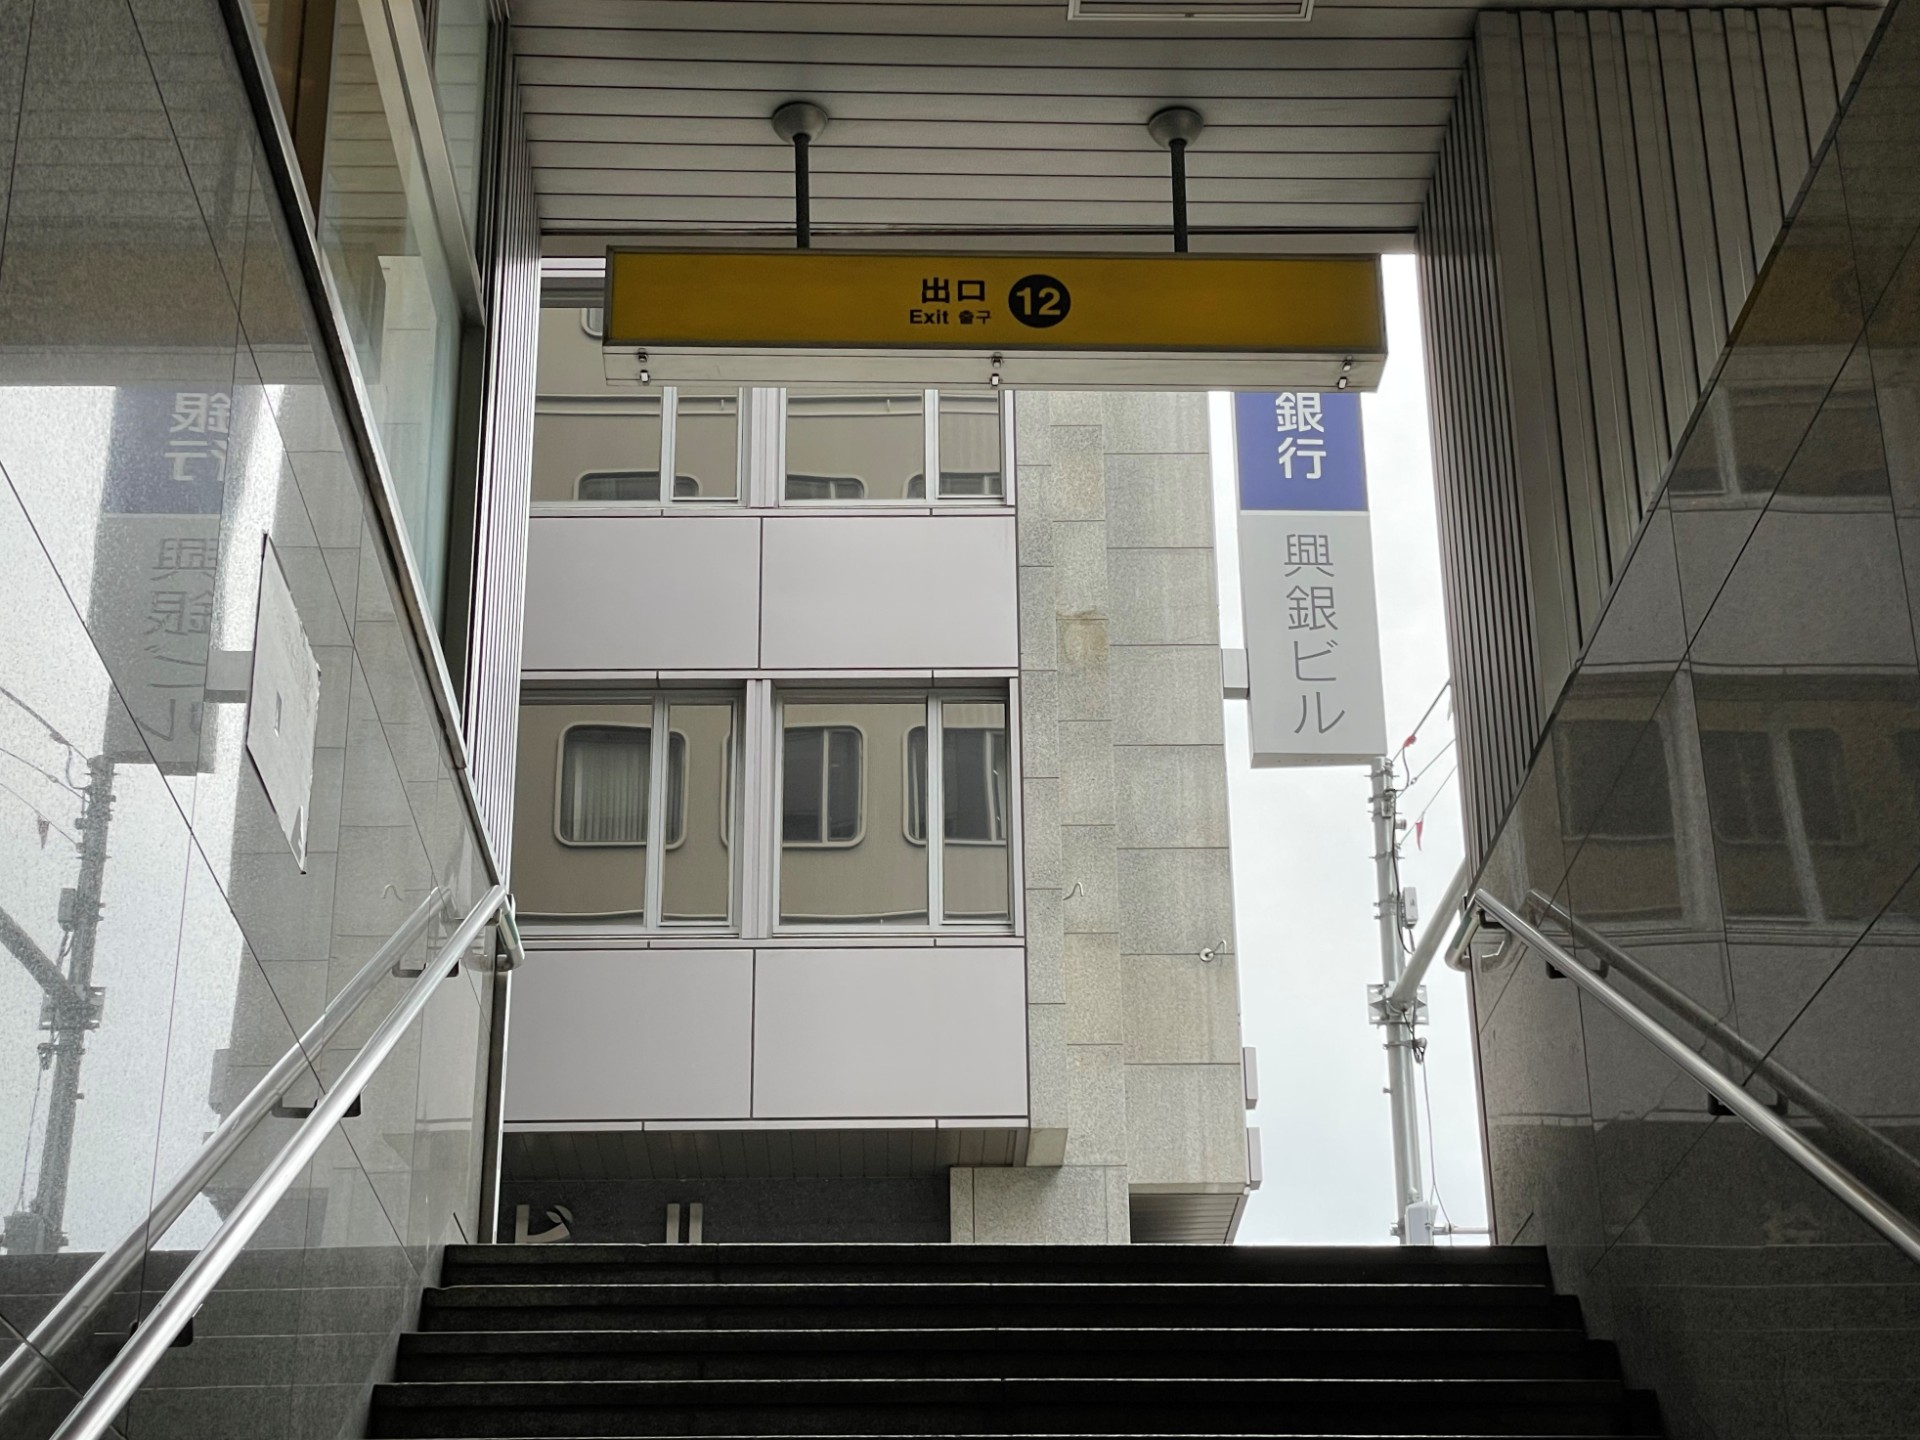 12番の出口を目指して階段をのぼります。